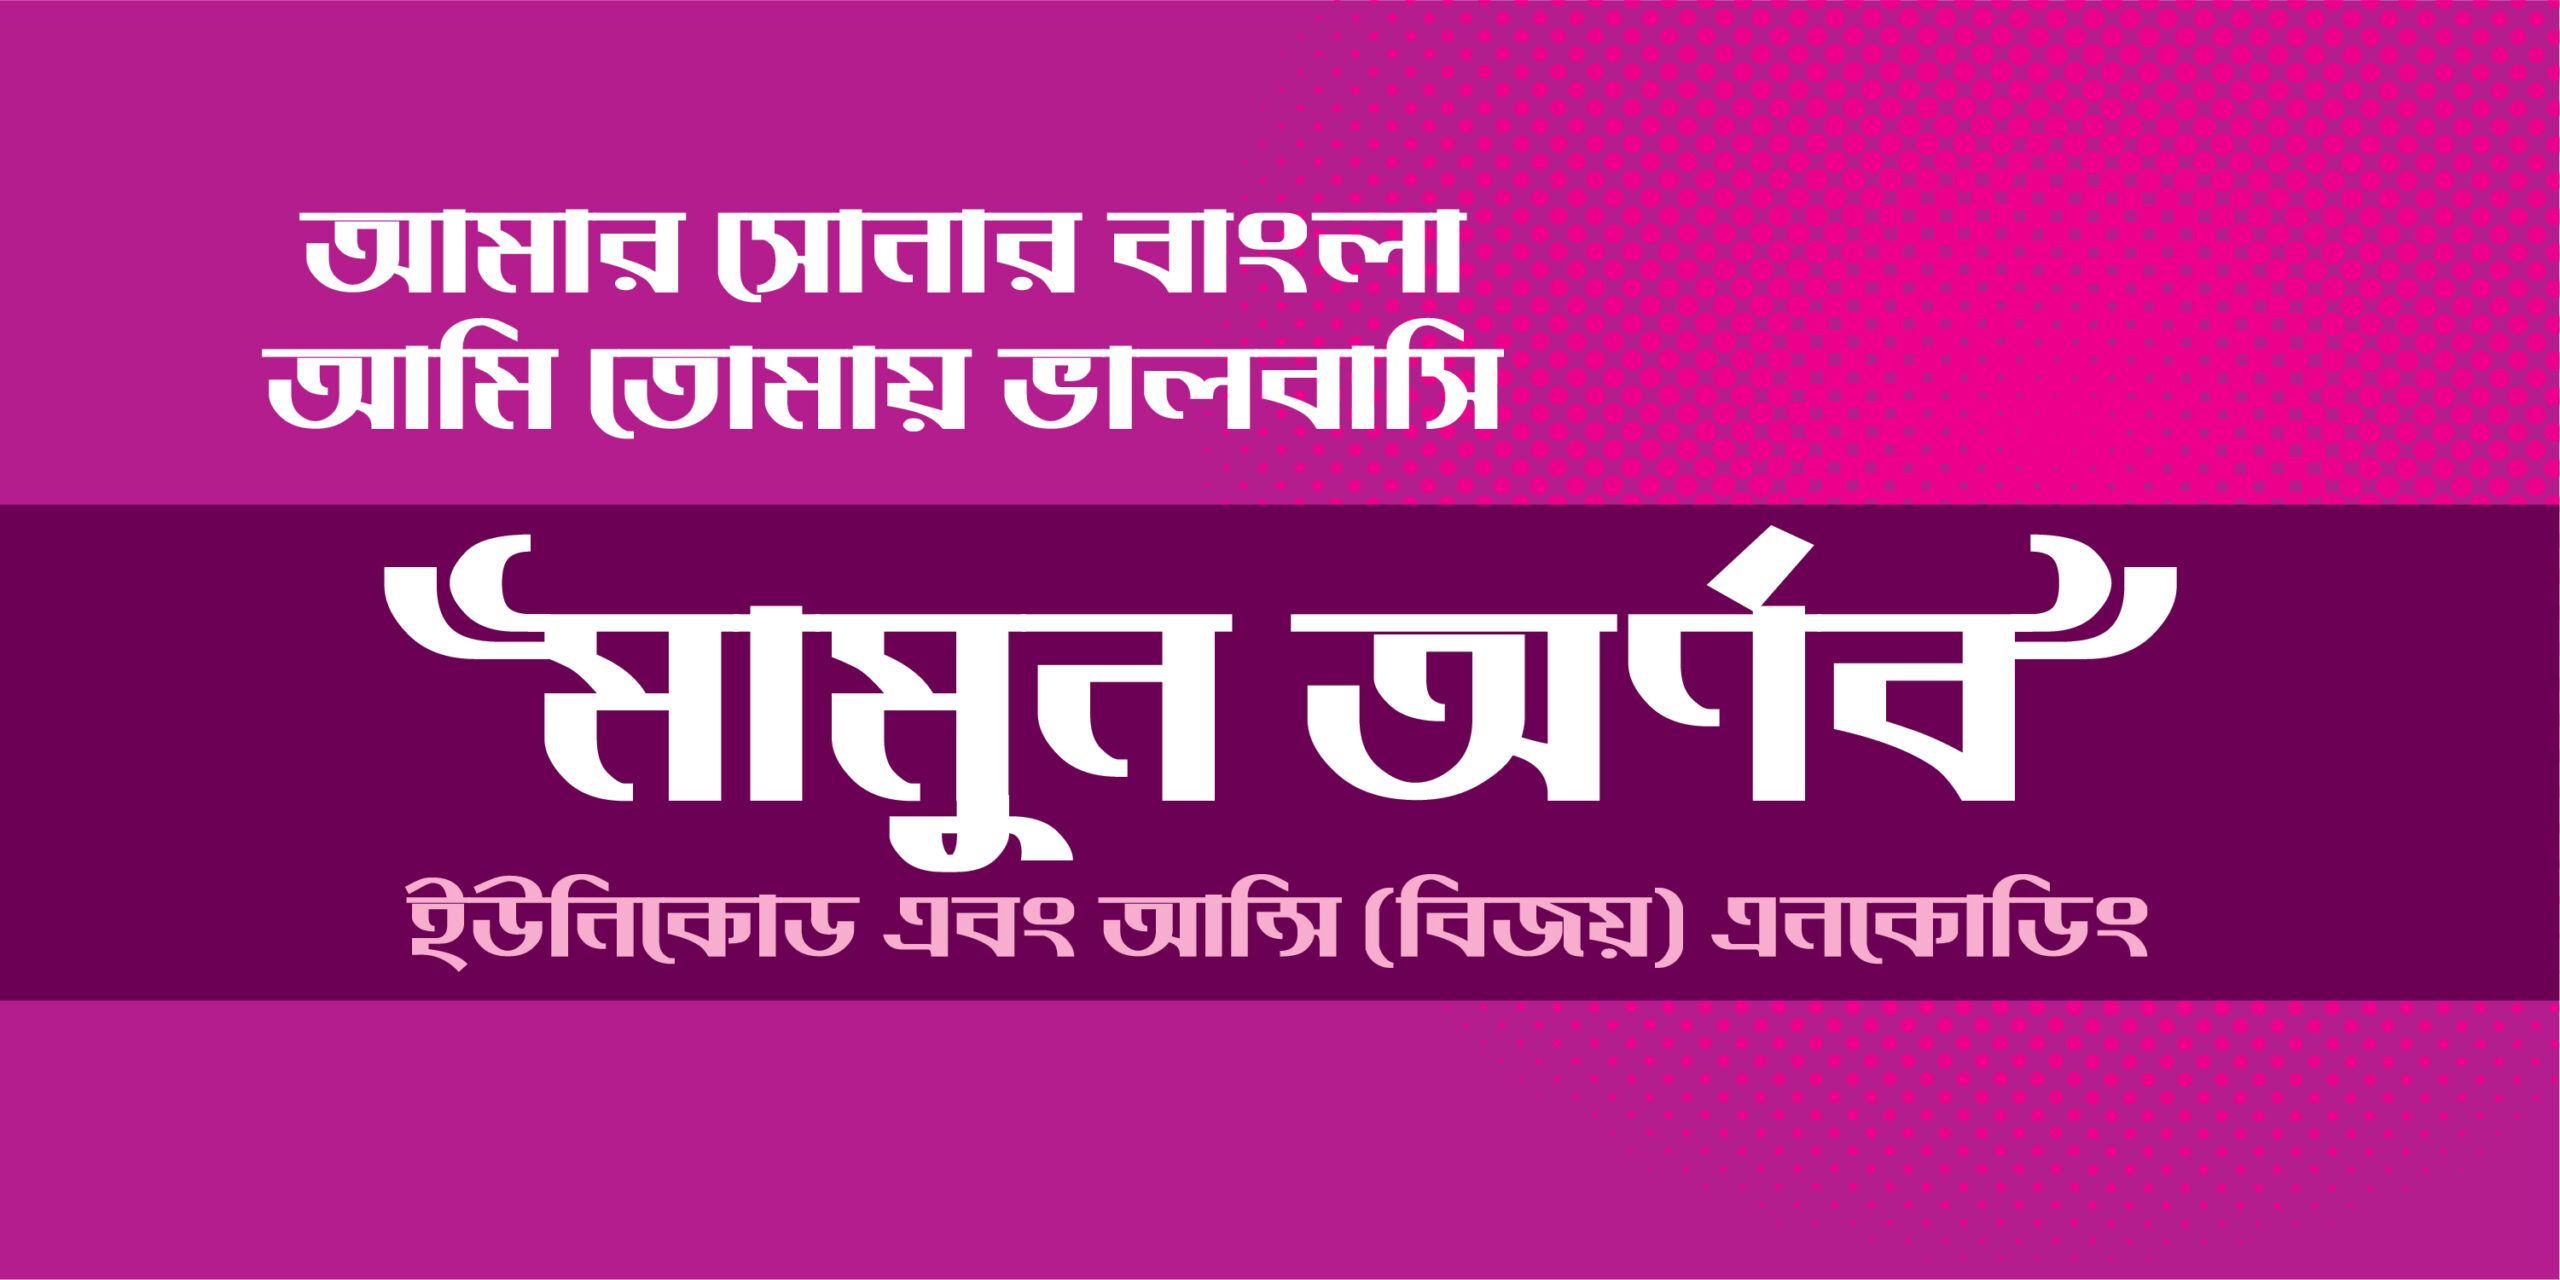 bangla font